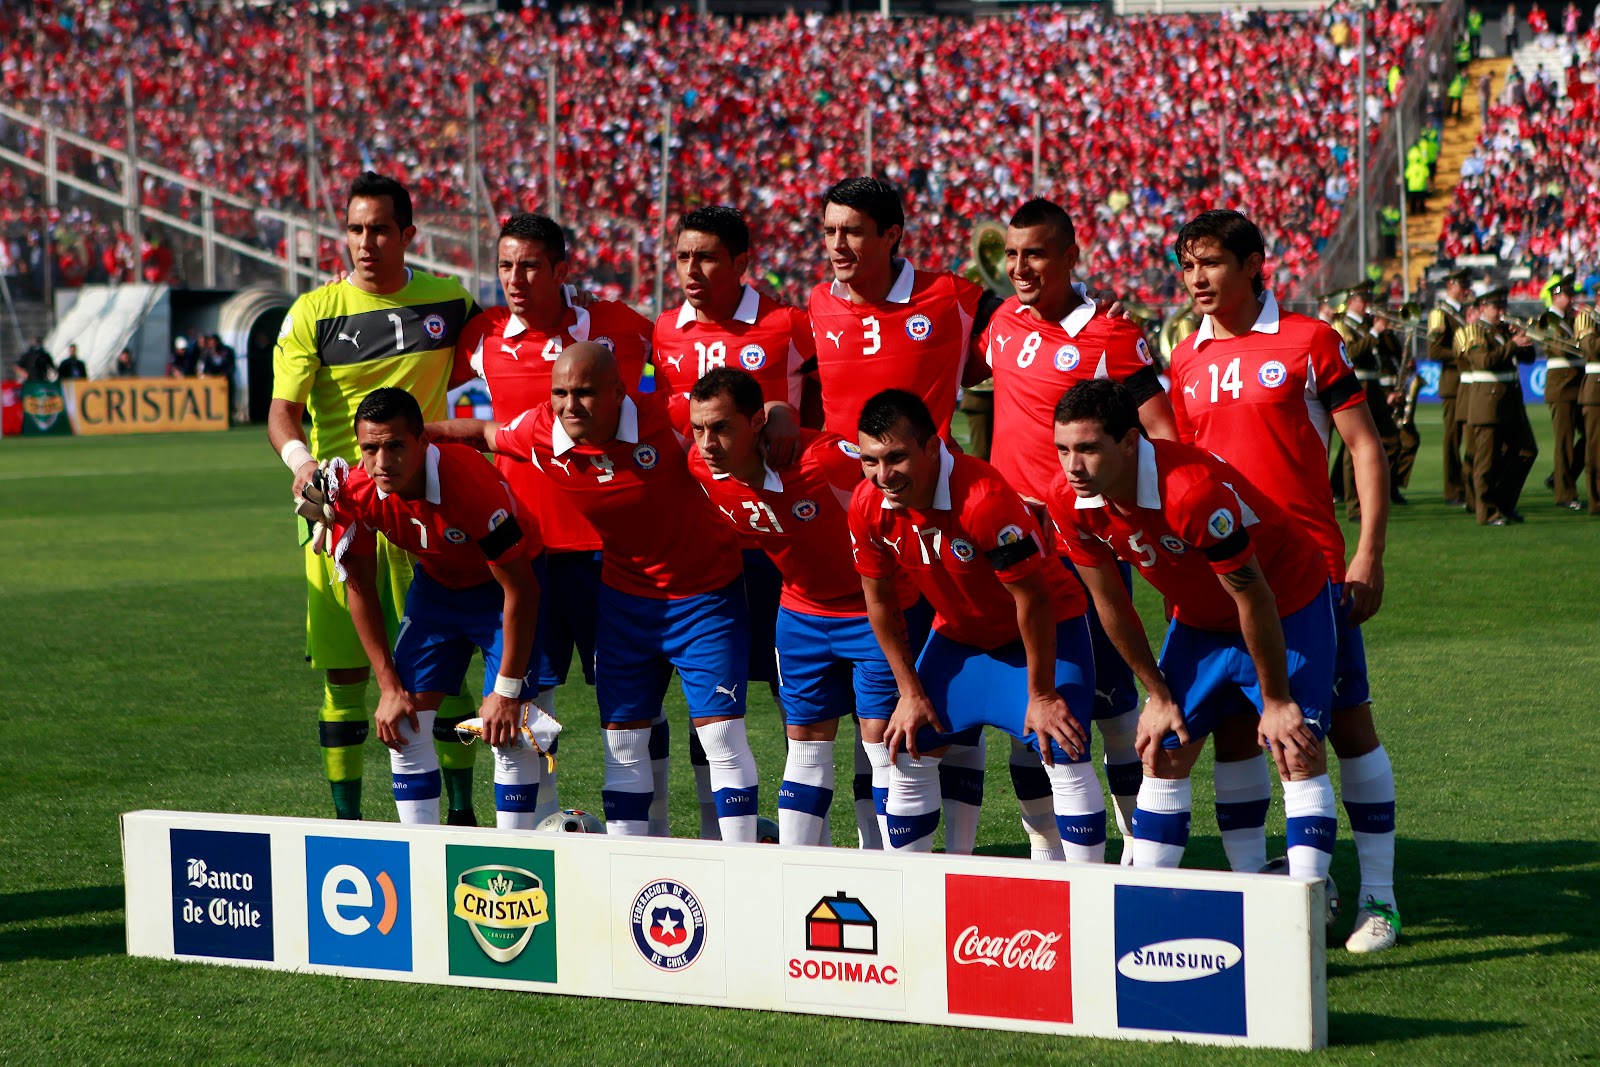 Formación de Chile ante Colombia, Clasificatorias Brasil 2014, 11 de septiembre de 2012